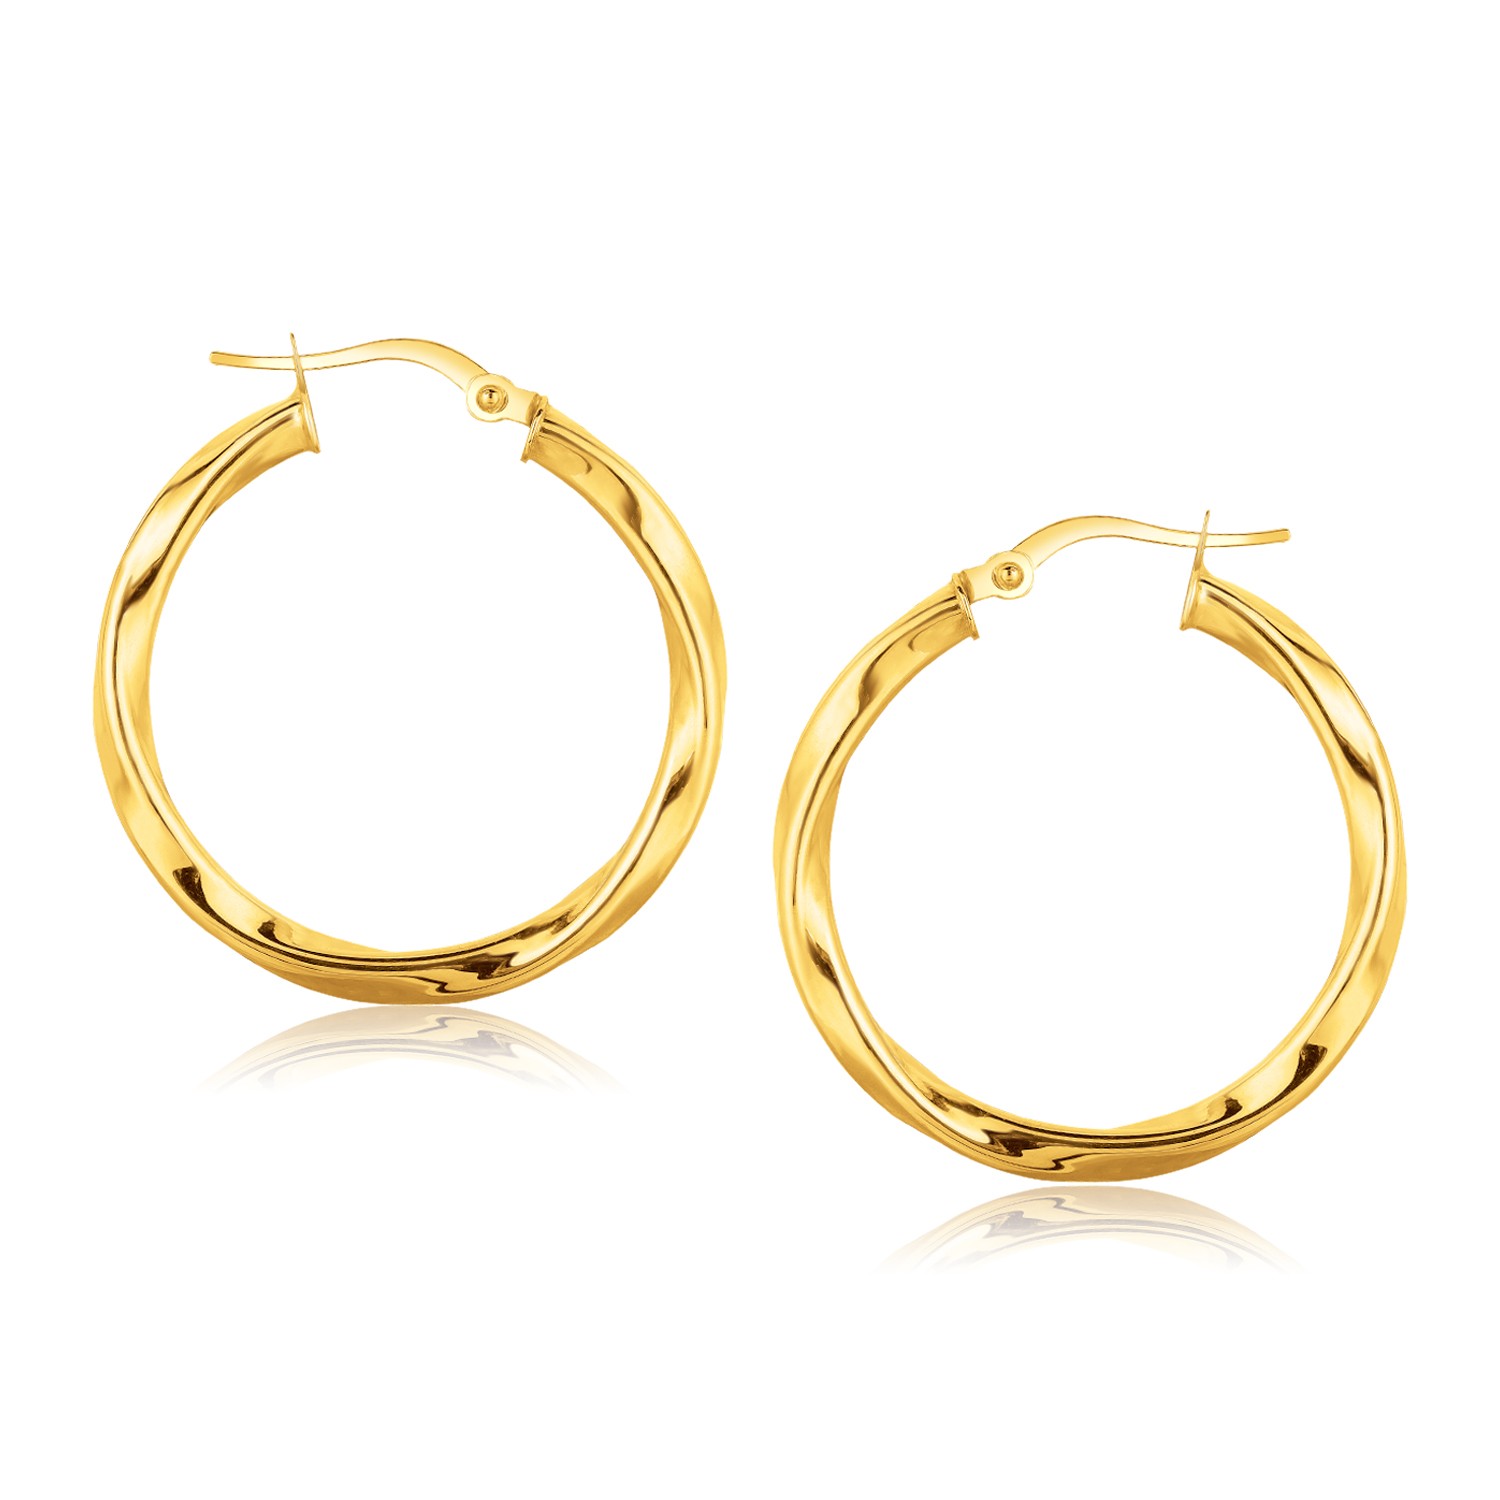 Classic Twist Hoop Earrings in 14k Yellow Gold (1 inch Diameter